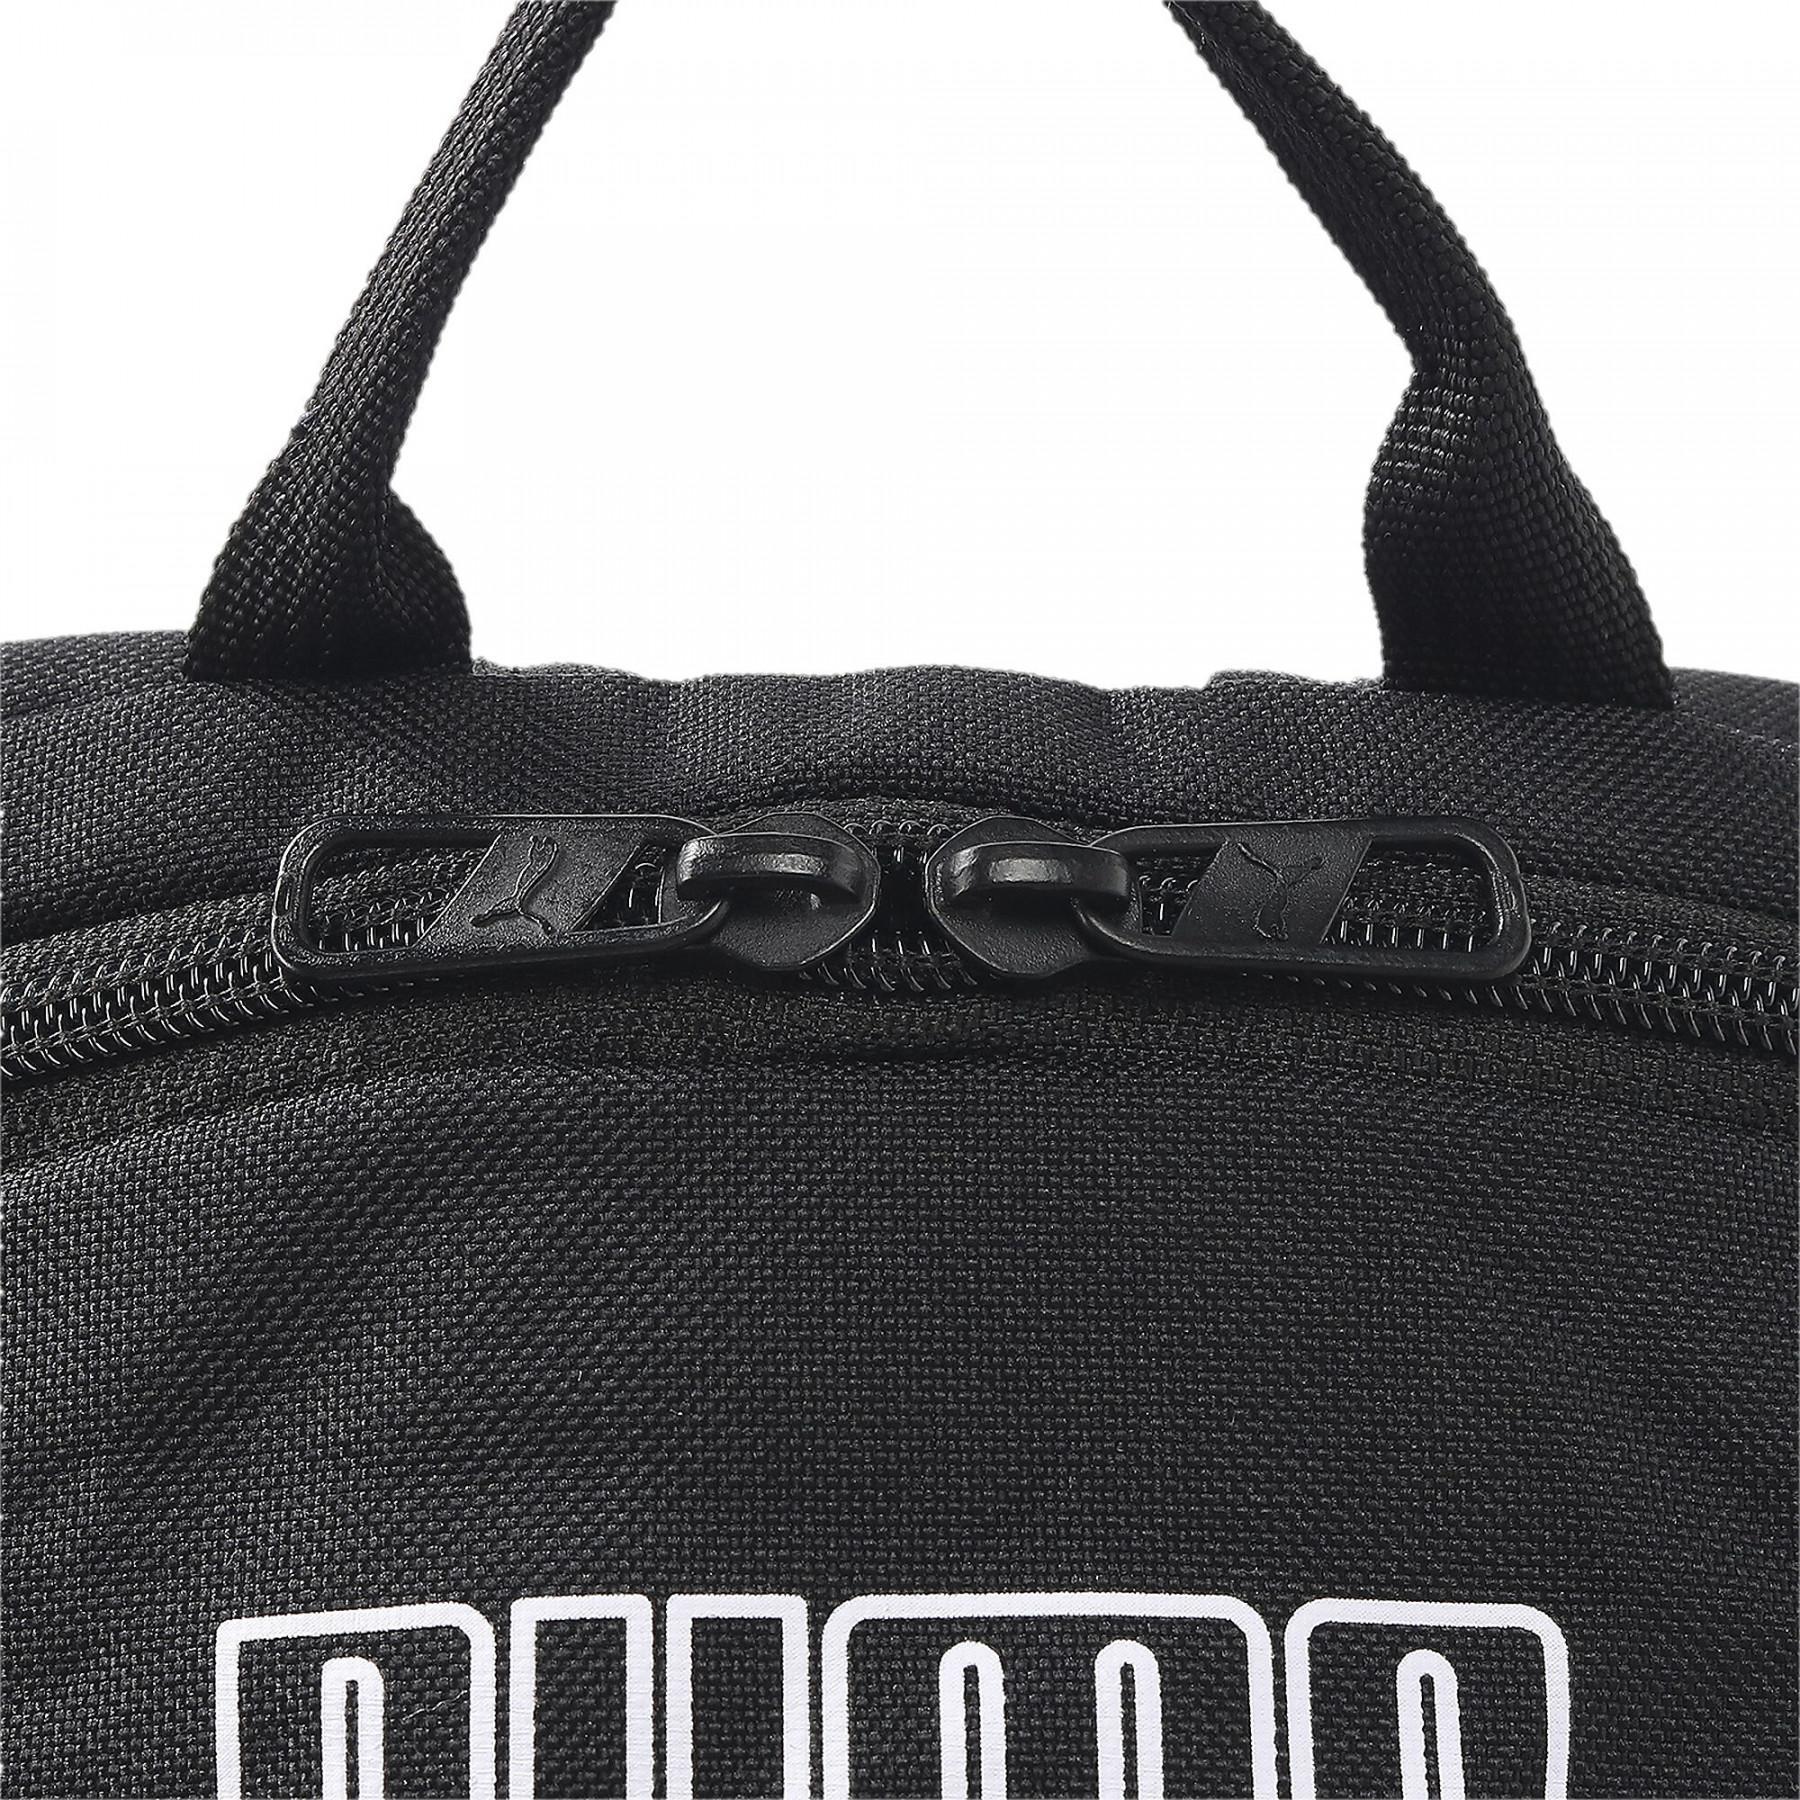 Backpack Puma PUMA Phase II